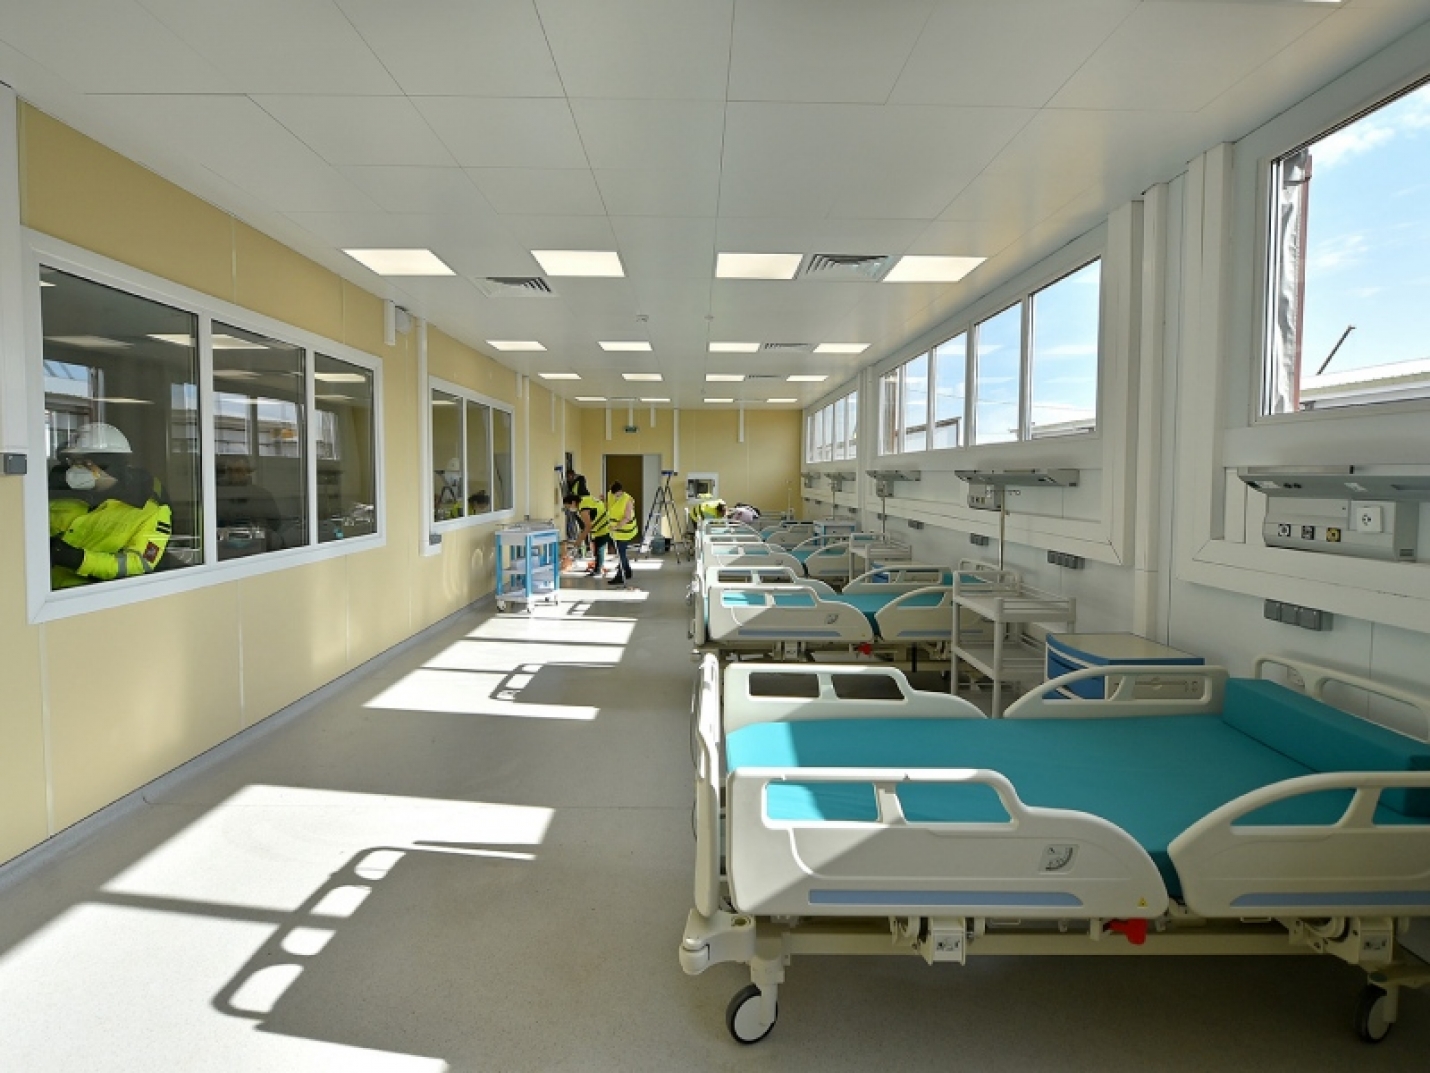 Больница в Новой Москве примет первых пациентов в понедельник